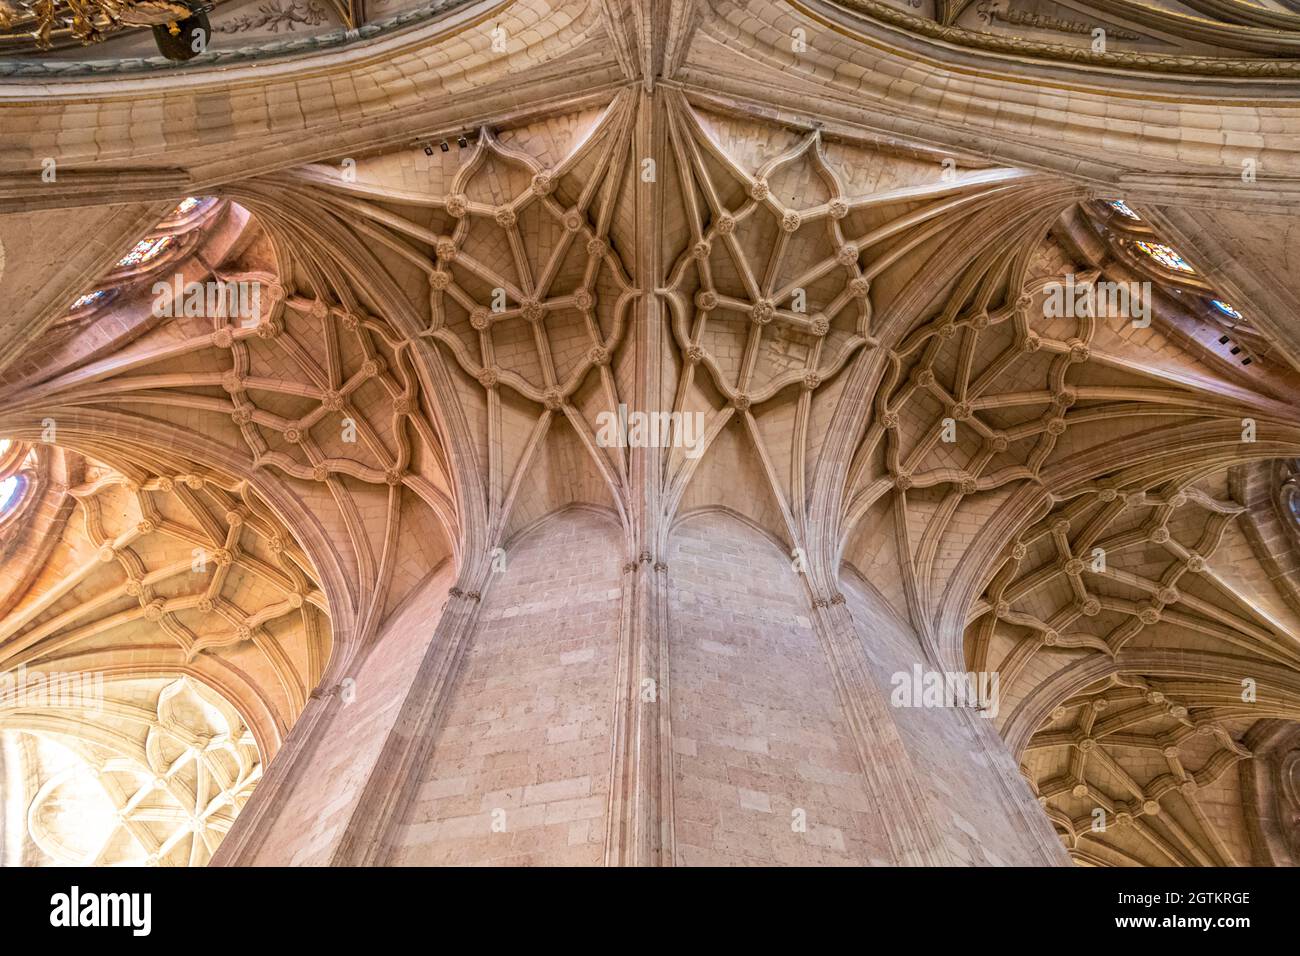 Ségovie, Espagne. Voûte nervurée gothique à l'intérieur de la cathédrale de Ségovie à la ambulatoire ou à l'abside Banque D'Images